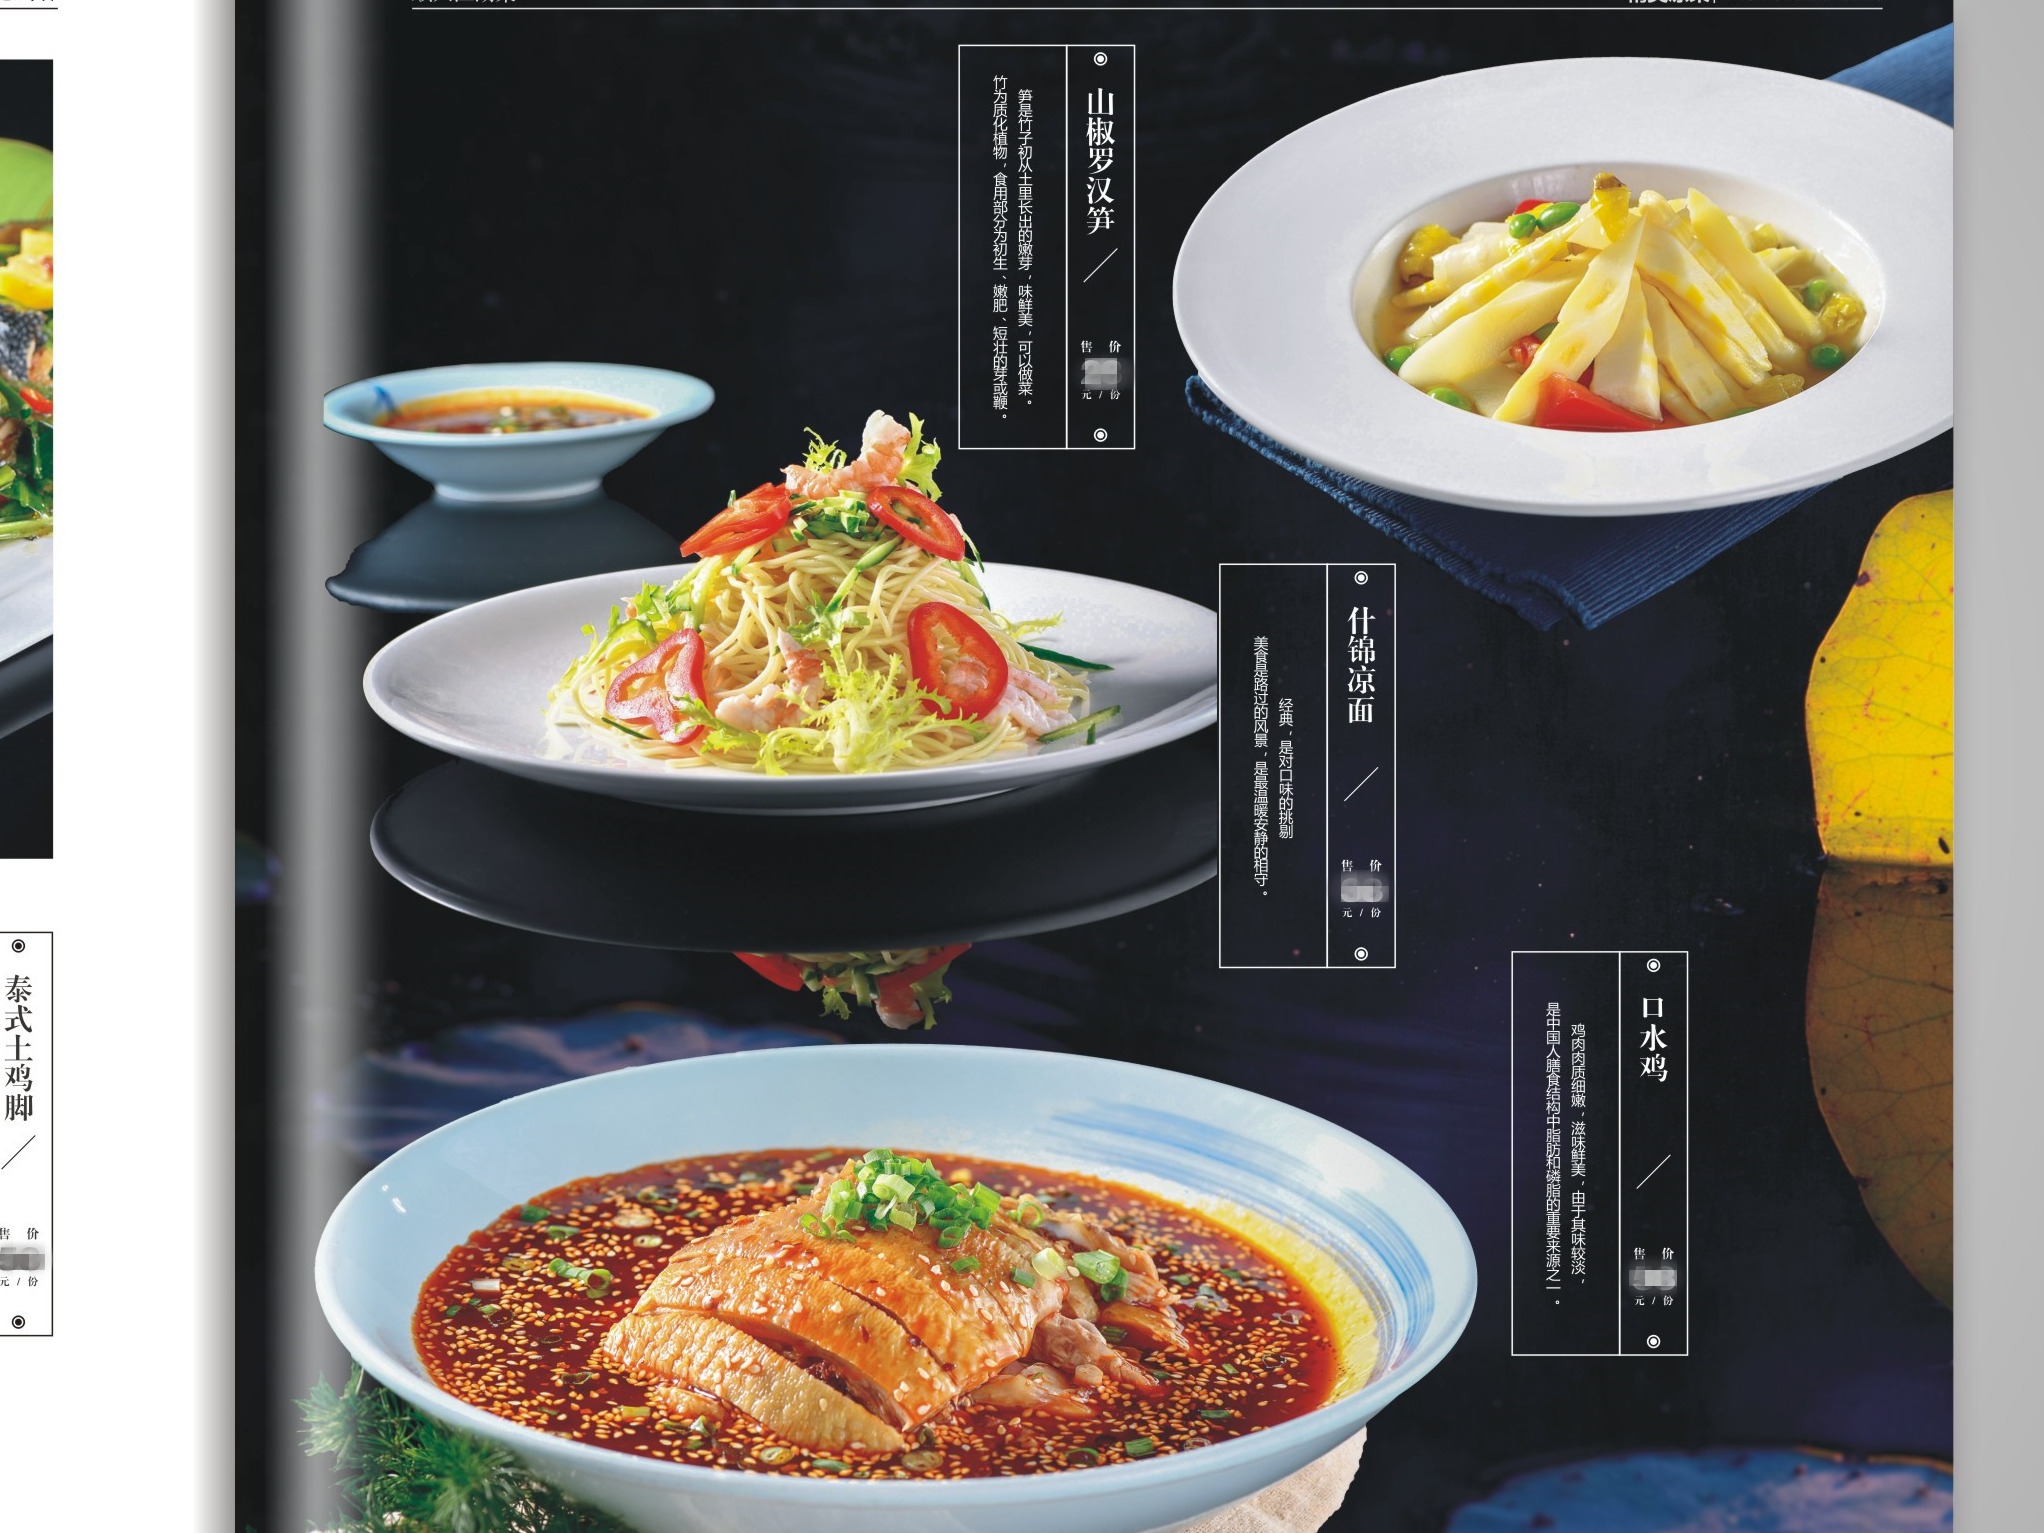 中餐菜谱设计窍门让您掌握不一样的菜单设计步骤-捷达菜谱设计制作公司